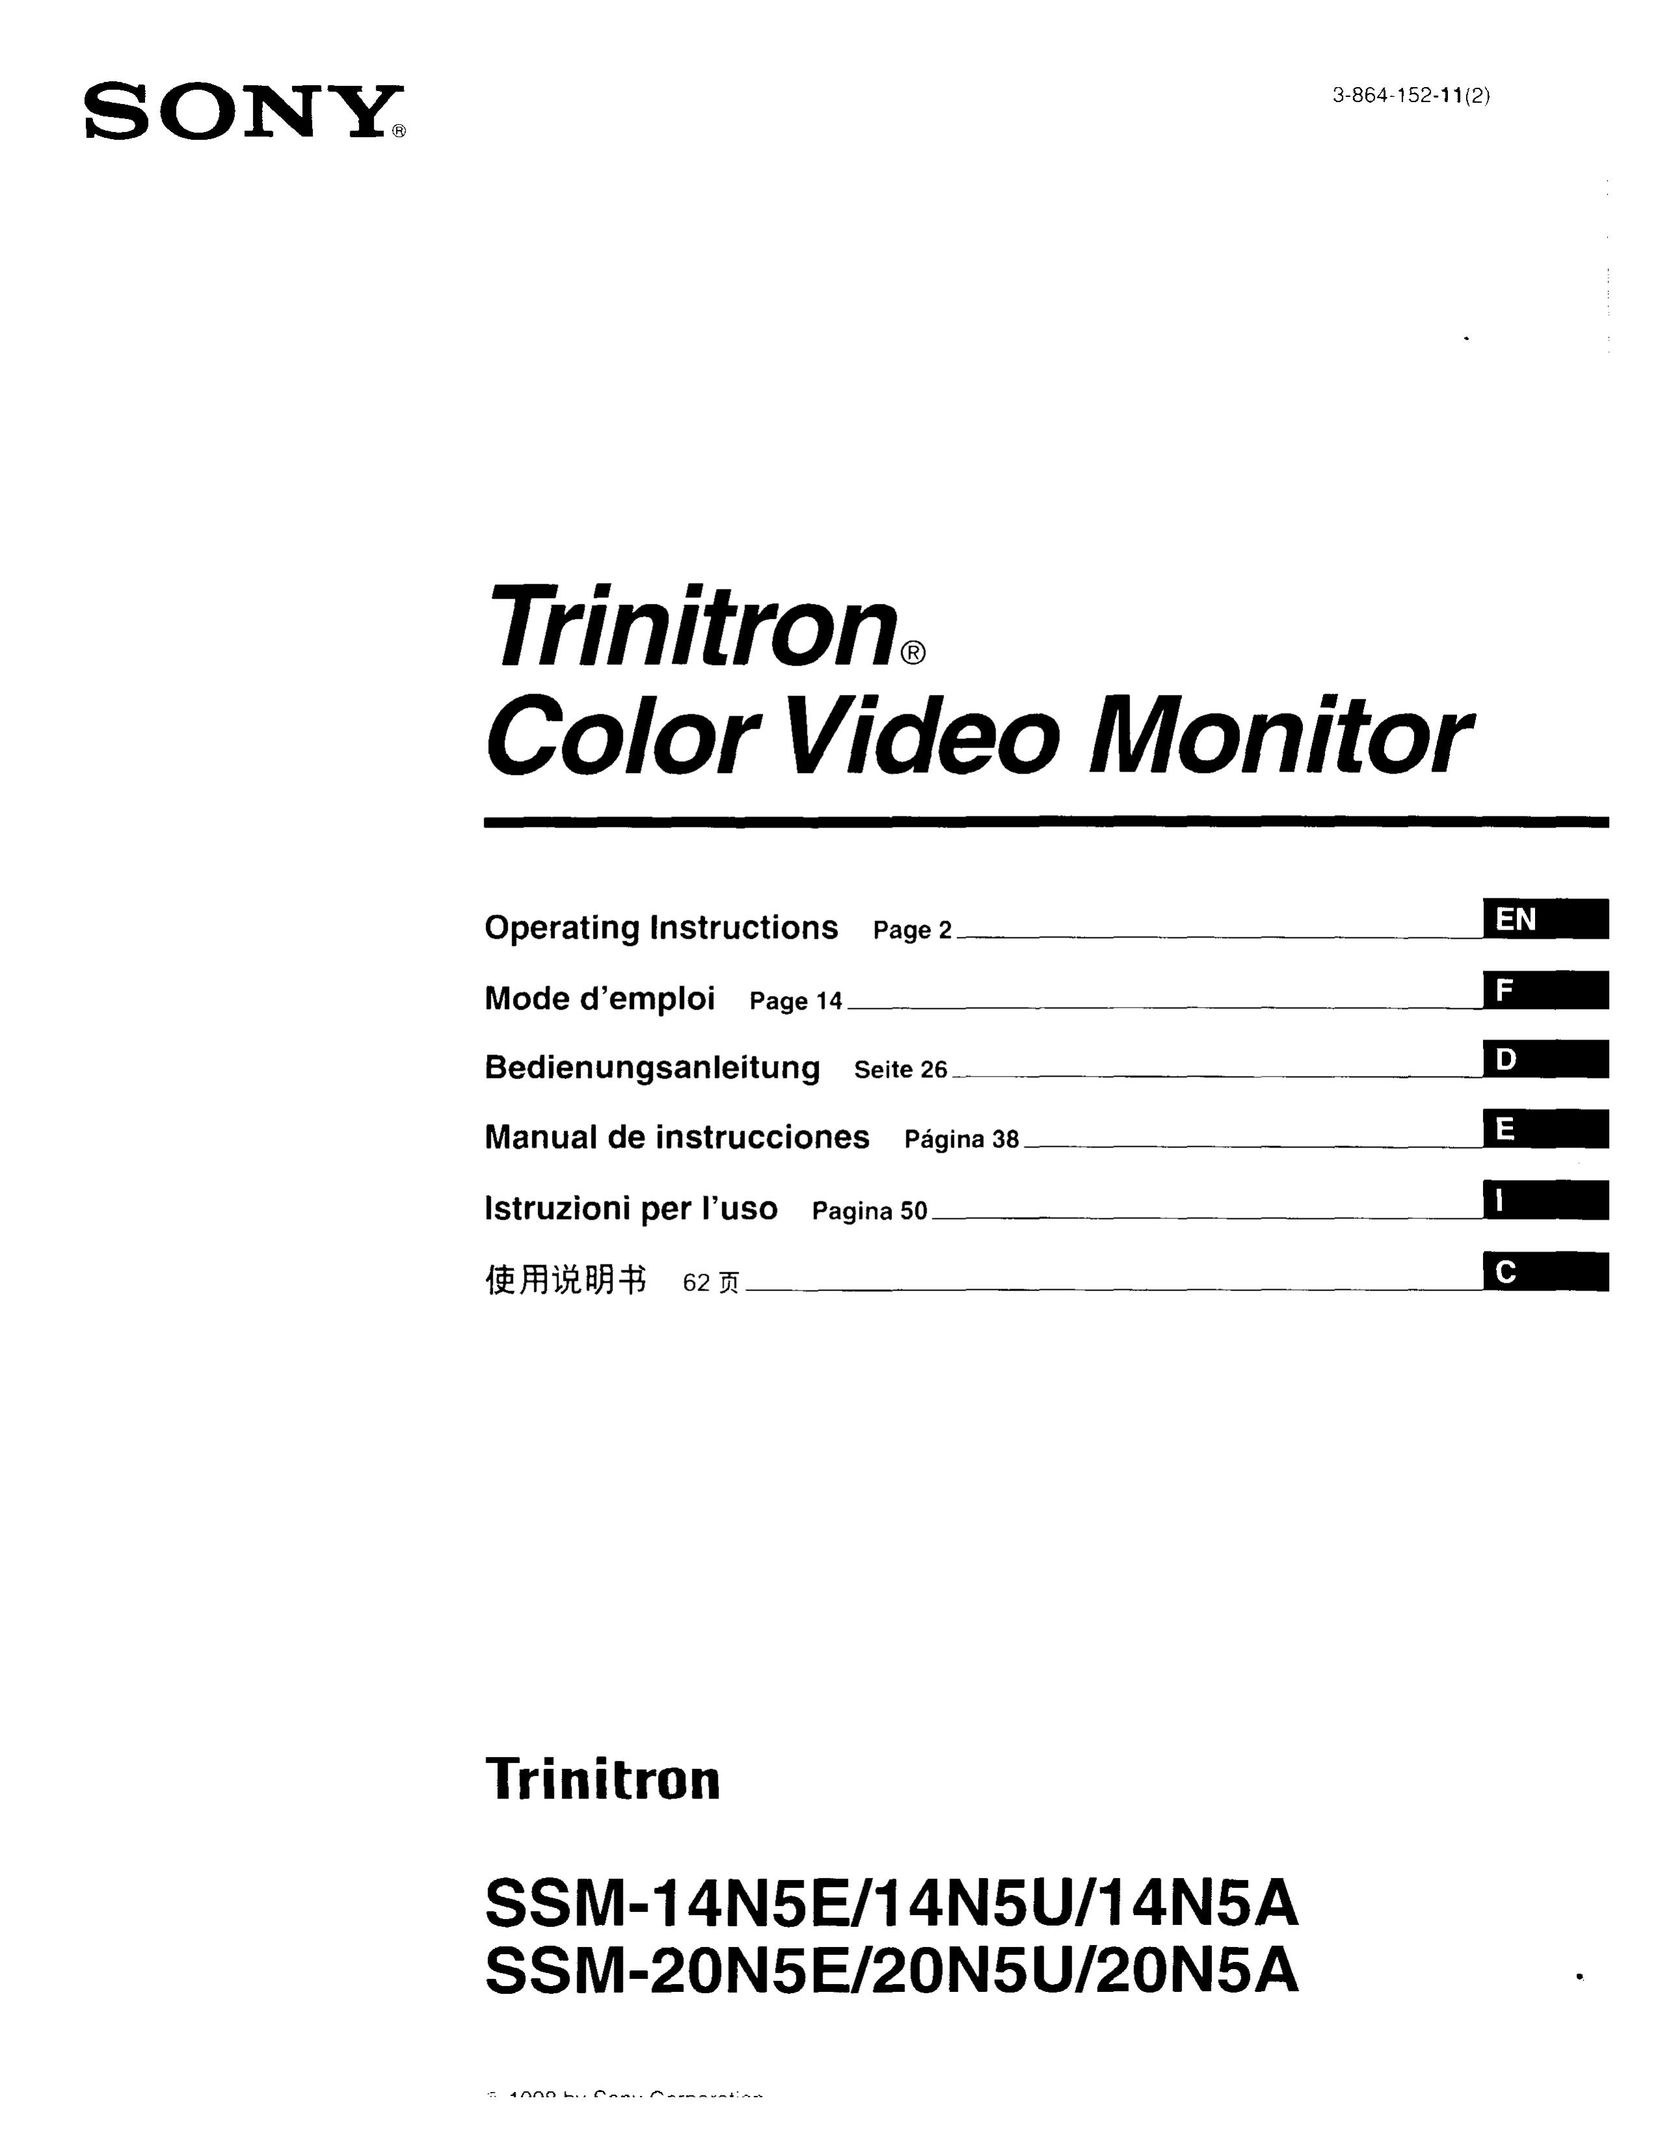 Sony SSM-14N5E/14N5U/14N5A Car Video System User Manual